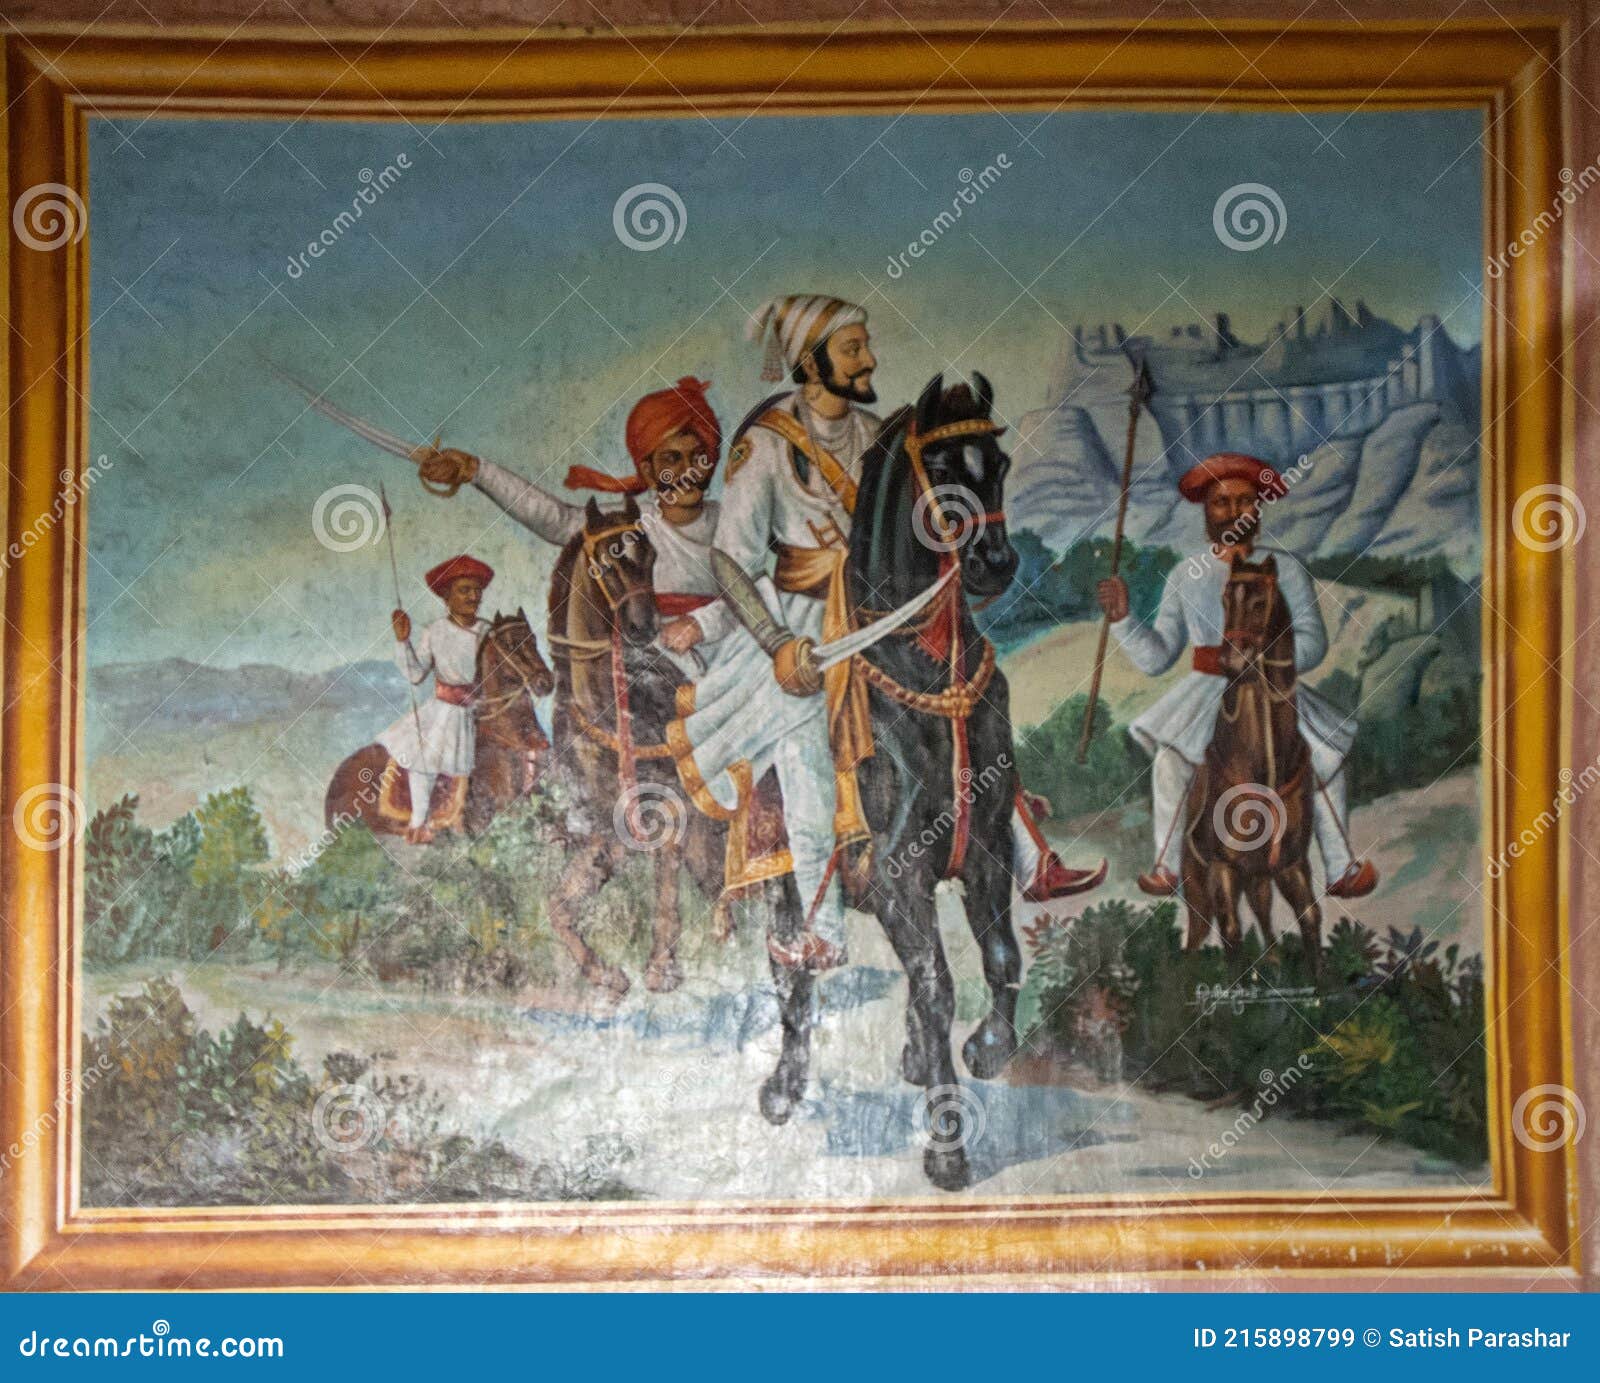 Download Shivaji Maharaj Riding Horse Uphill Hd Wallpaper | Wallpapers.com